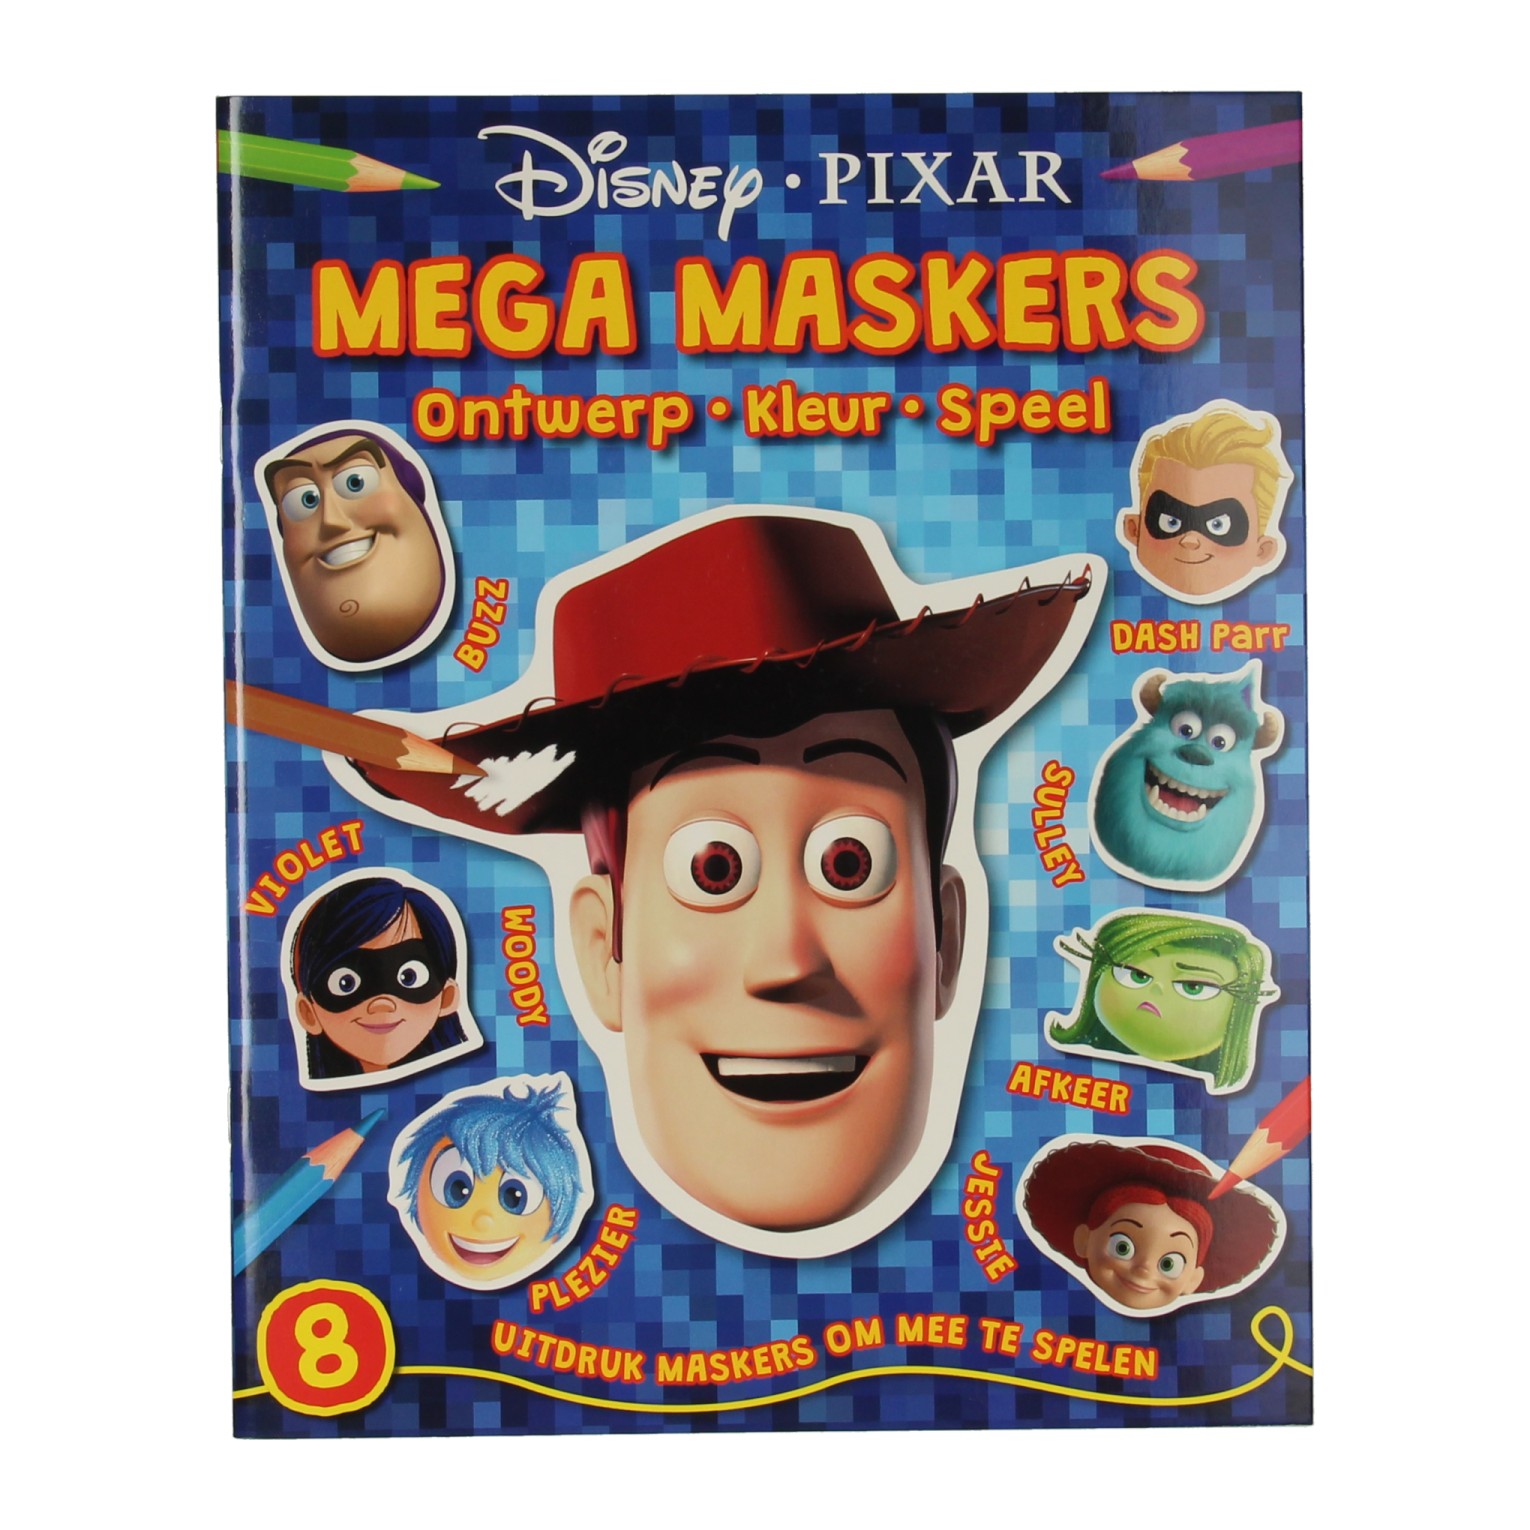 Masque Walt Disney Livre Disney Pixar